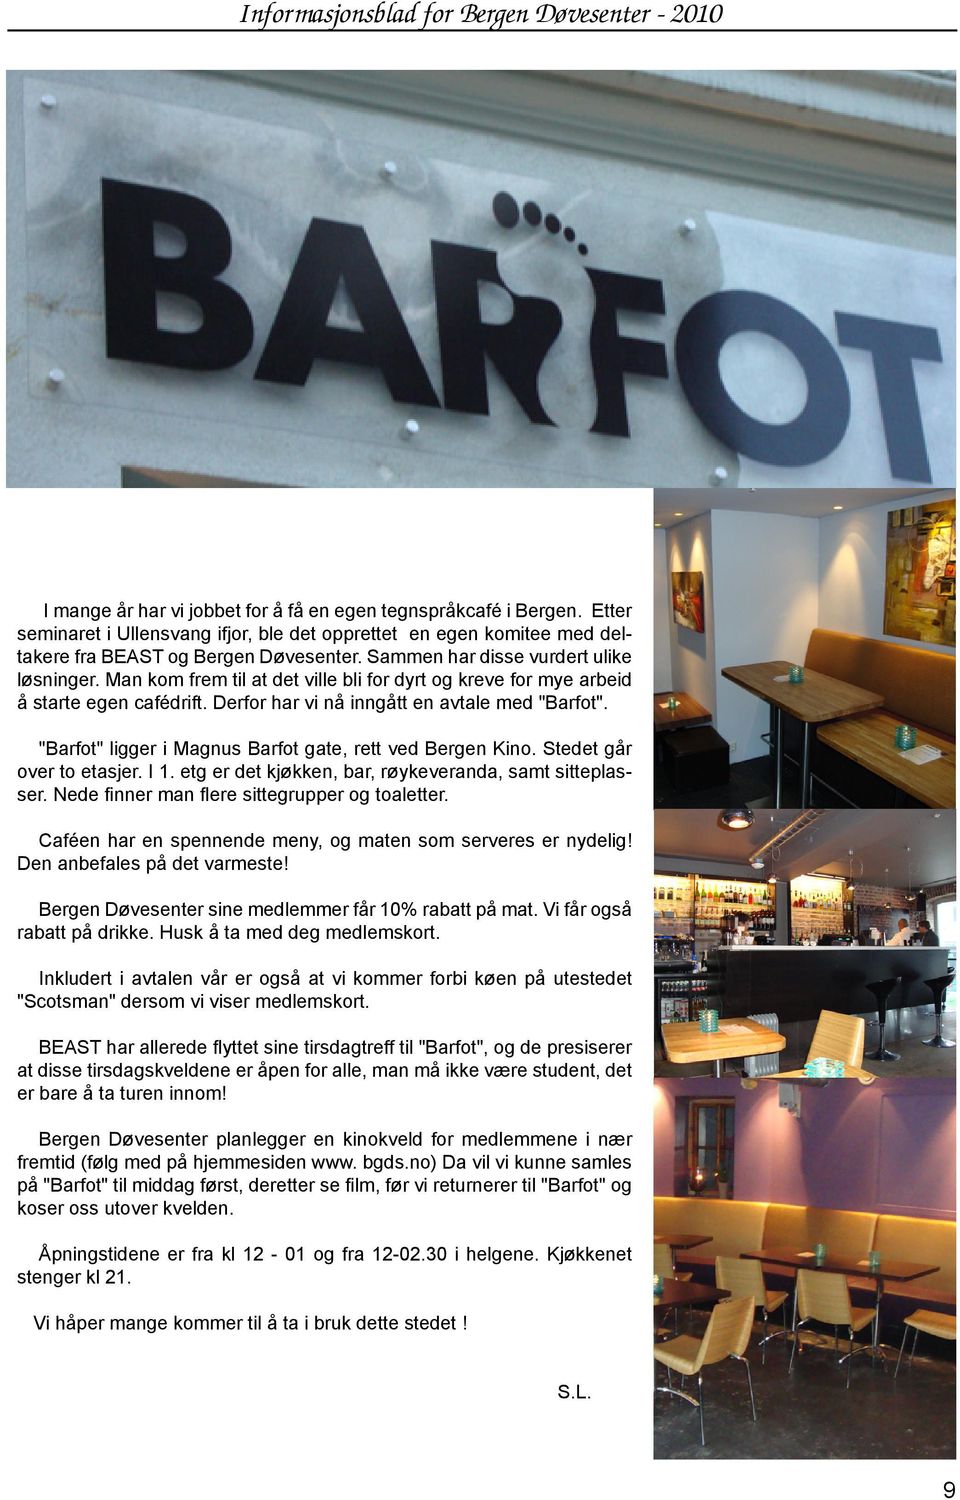 Man kom frem til at det ville bli for dyrt og kreve for mye arbeid å starte egen cafédrift. Derfor har vi nå inngått en avtale med "Barfot". "Barfot" ligger i Magnus Barfot gate, rett ved Bergen Kino.